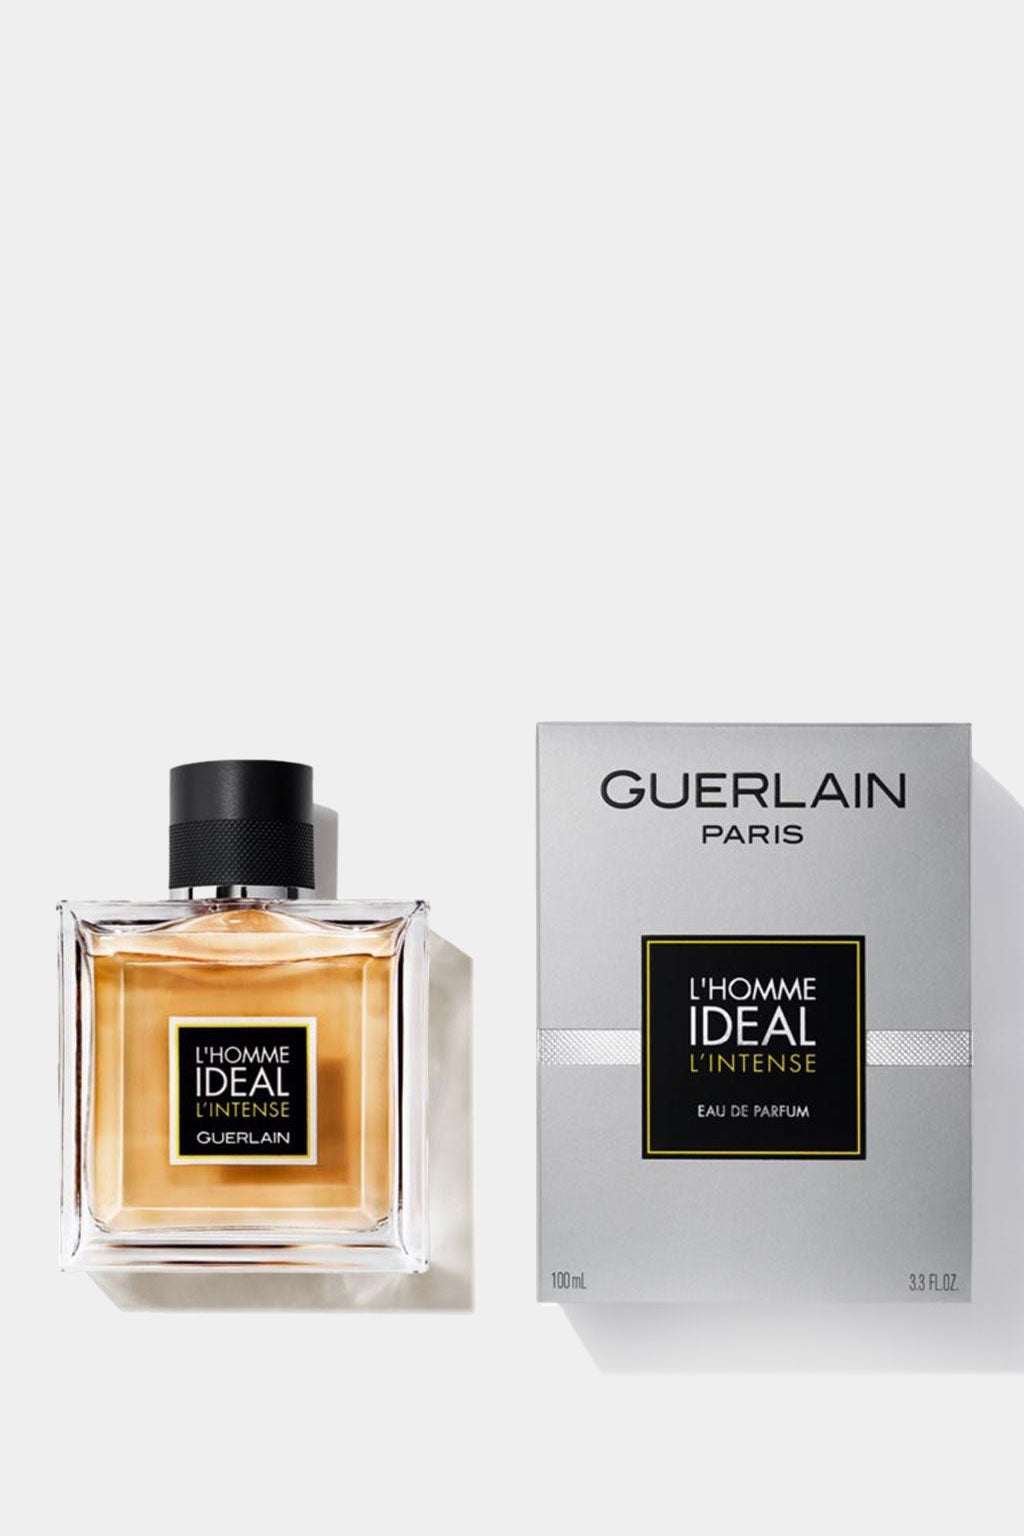 Guerlain - L'homme Ideal L'intense Eau de Parfum